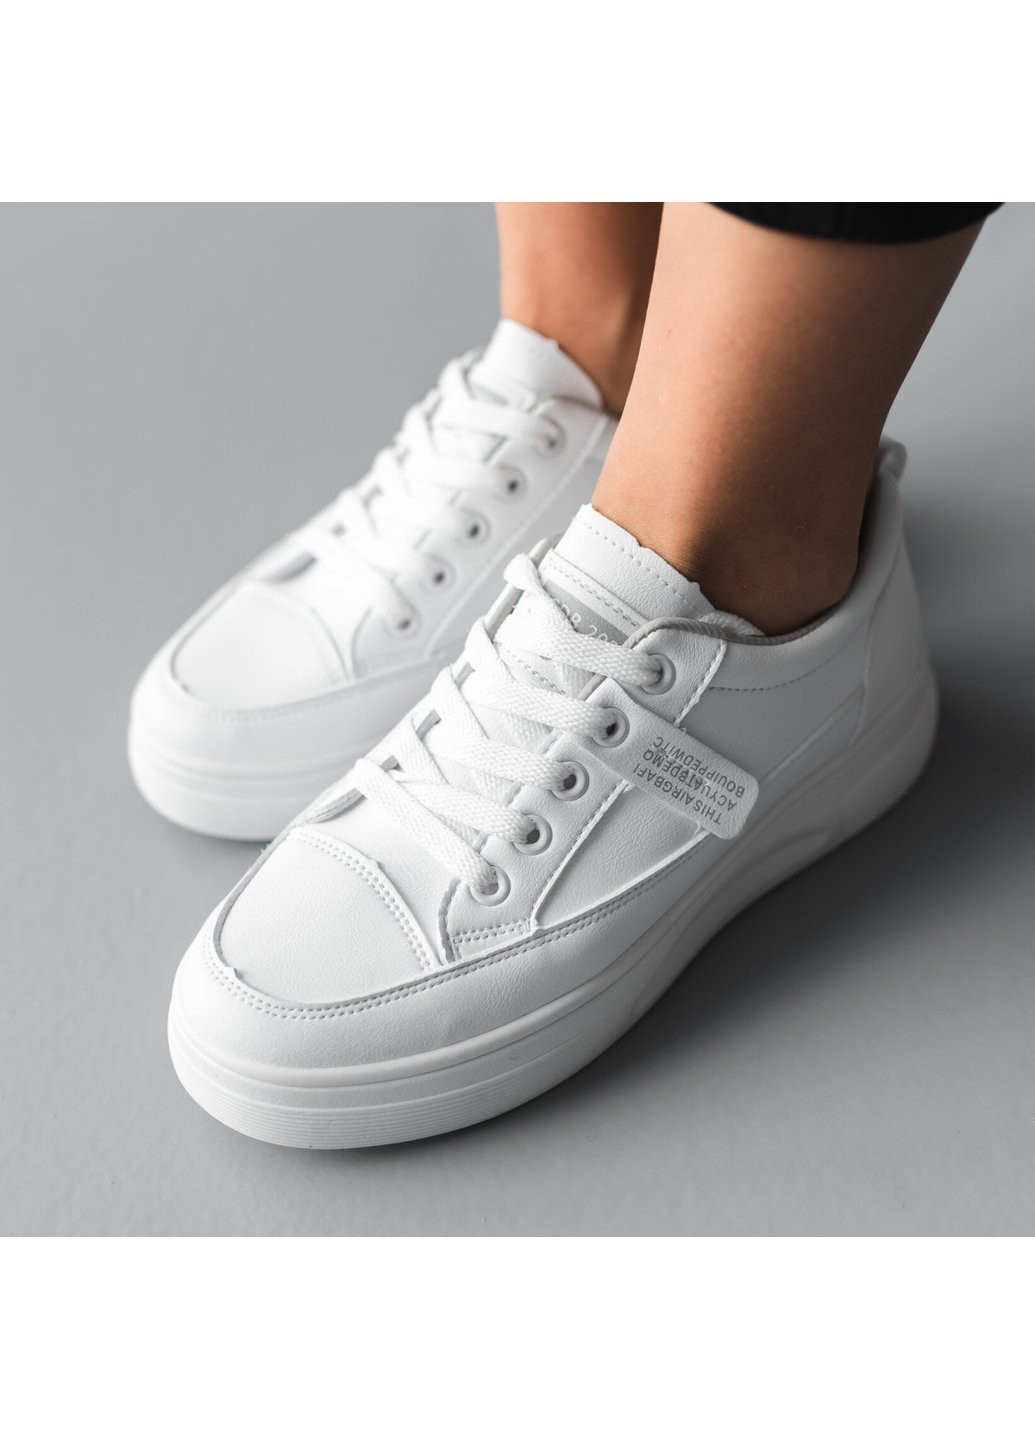 Білі осінні кросівки жіночі digby 3720 36 23 см білий Fashion